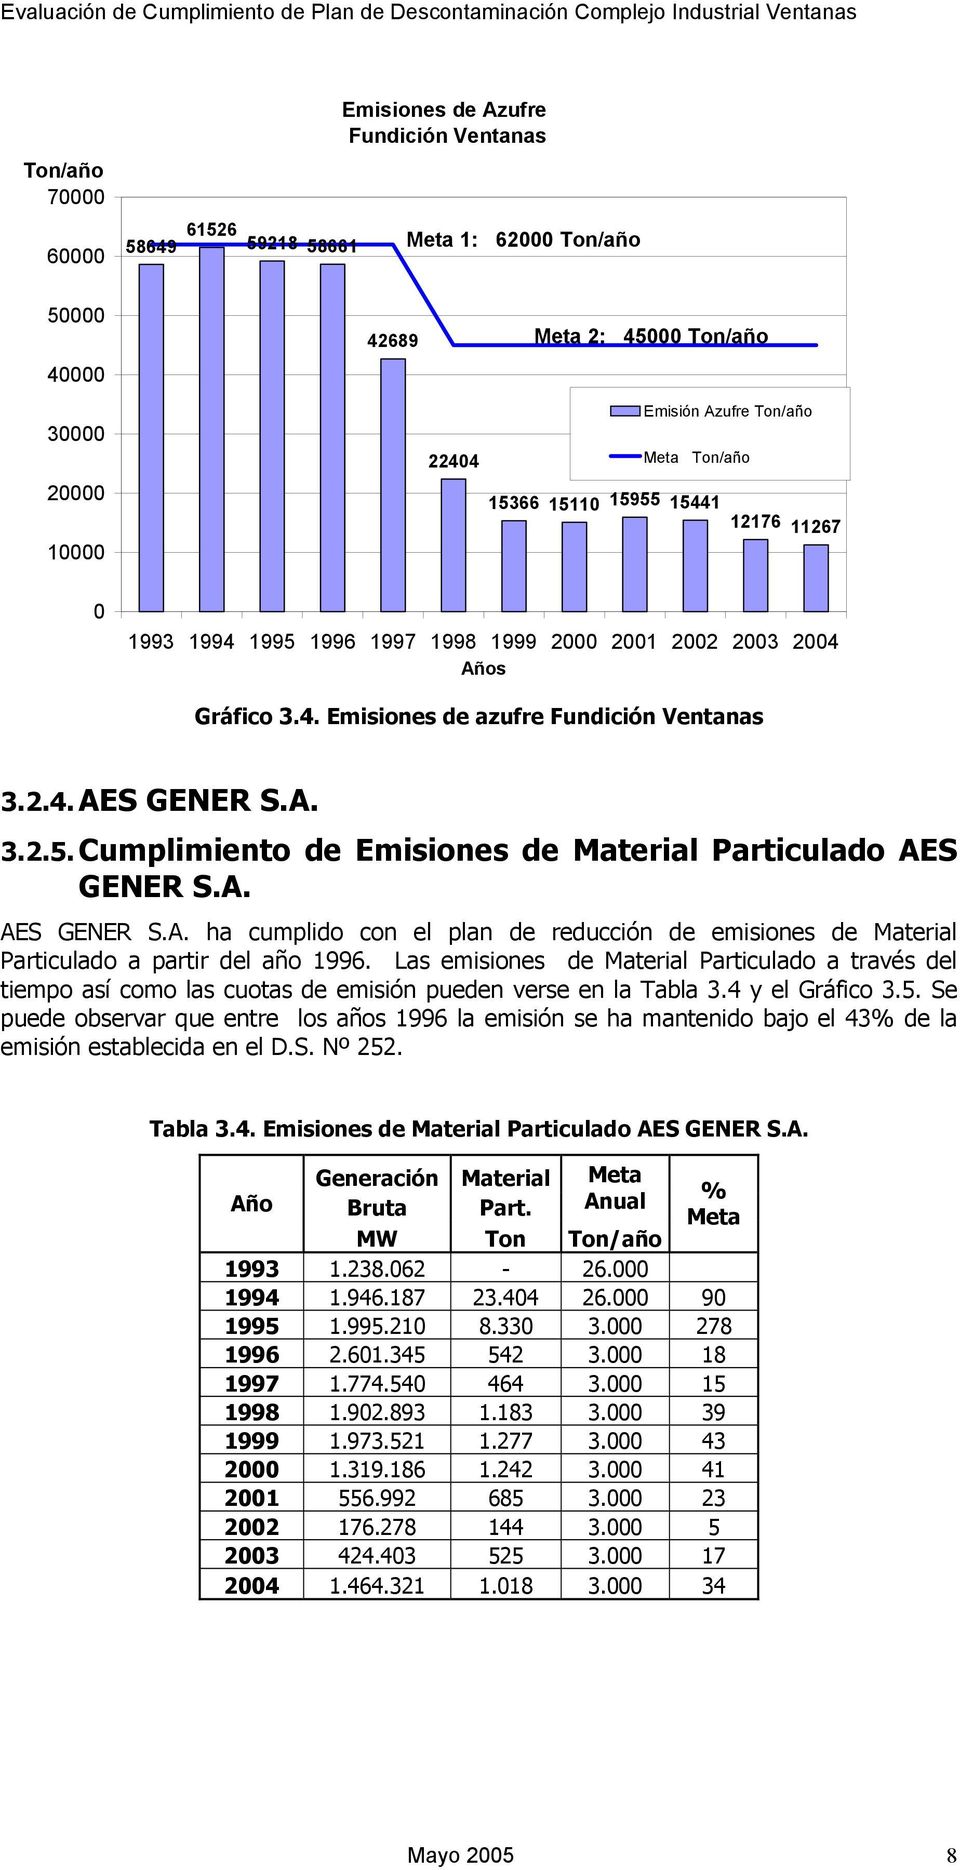 A. AES GENER S.A. ha cumplido con el plan de reducción de emisiones de Material Particulado a partir del año 1996.